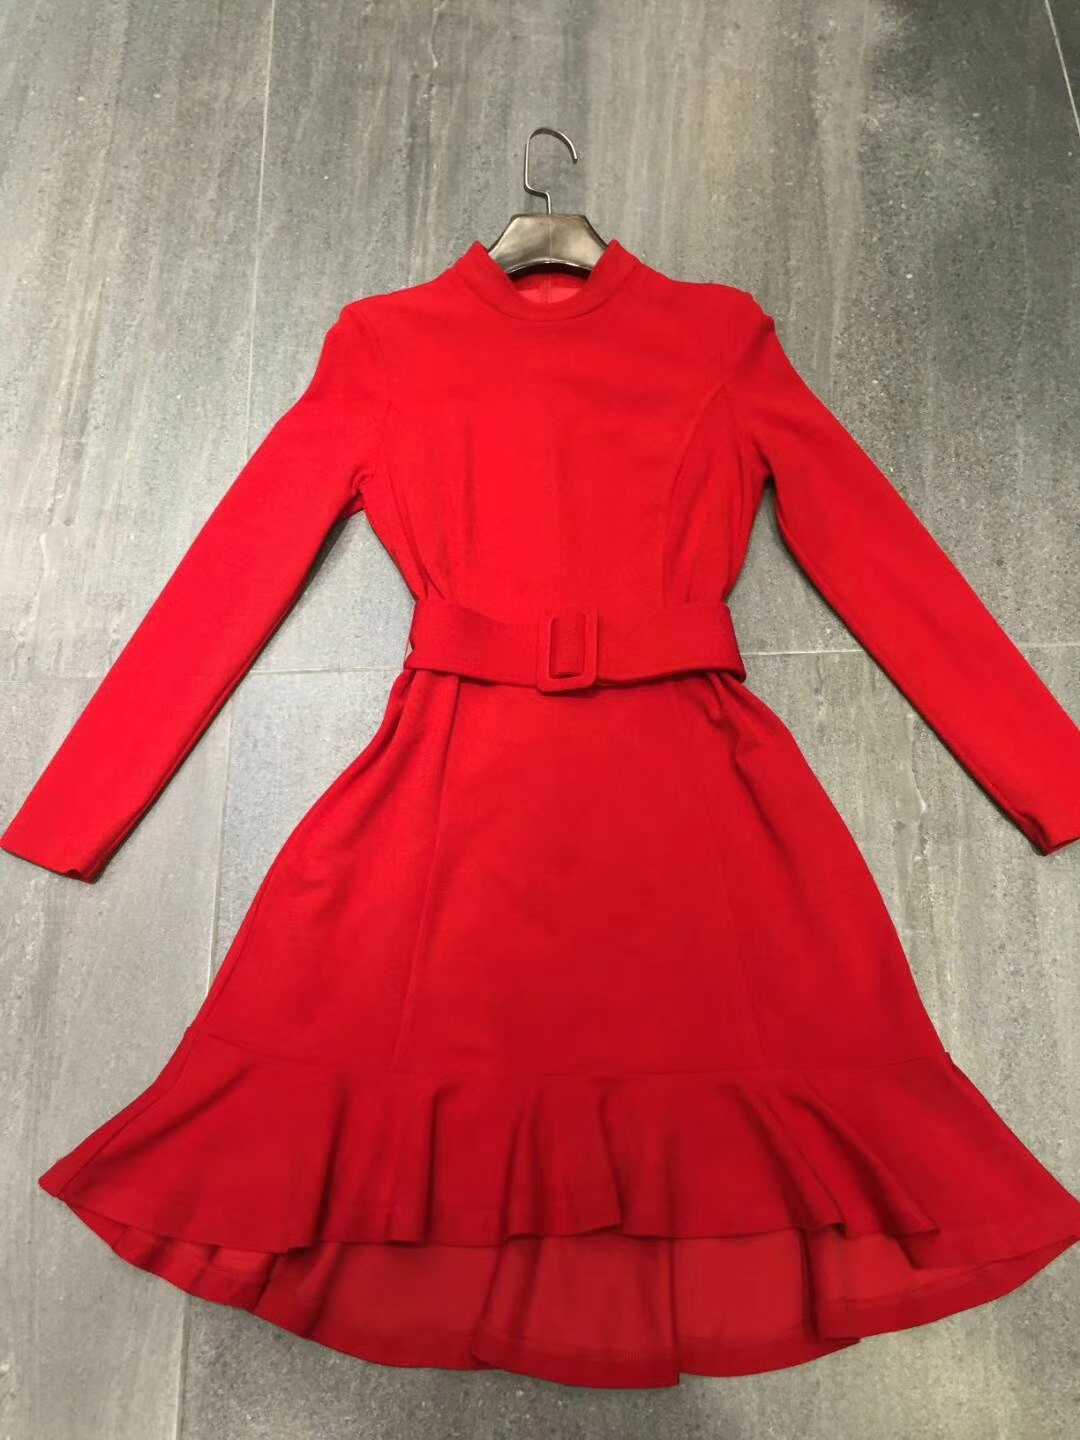 新款腰带连衣裙红色圆领长袖套头修身单件纯色时尚热卖大爱